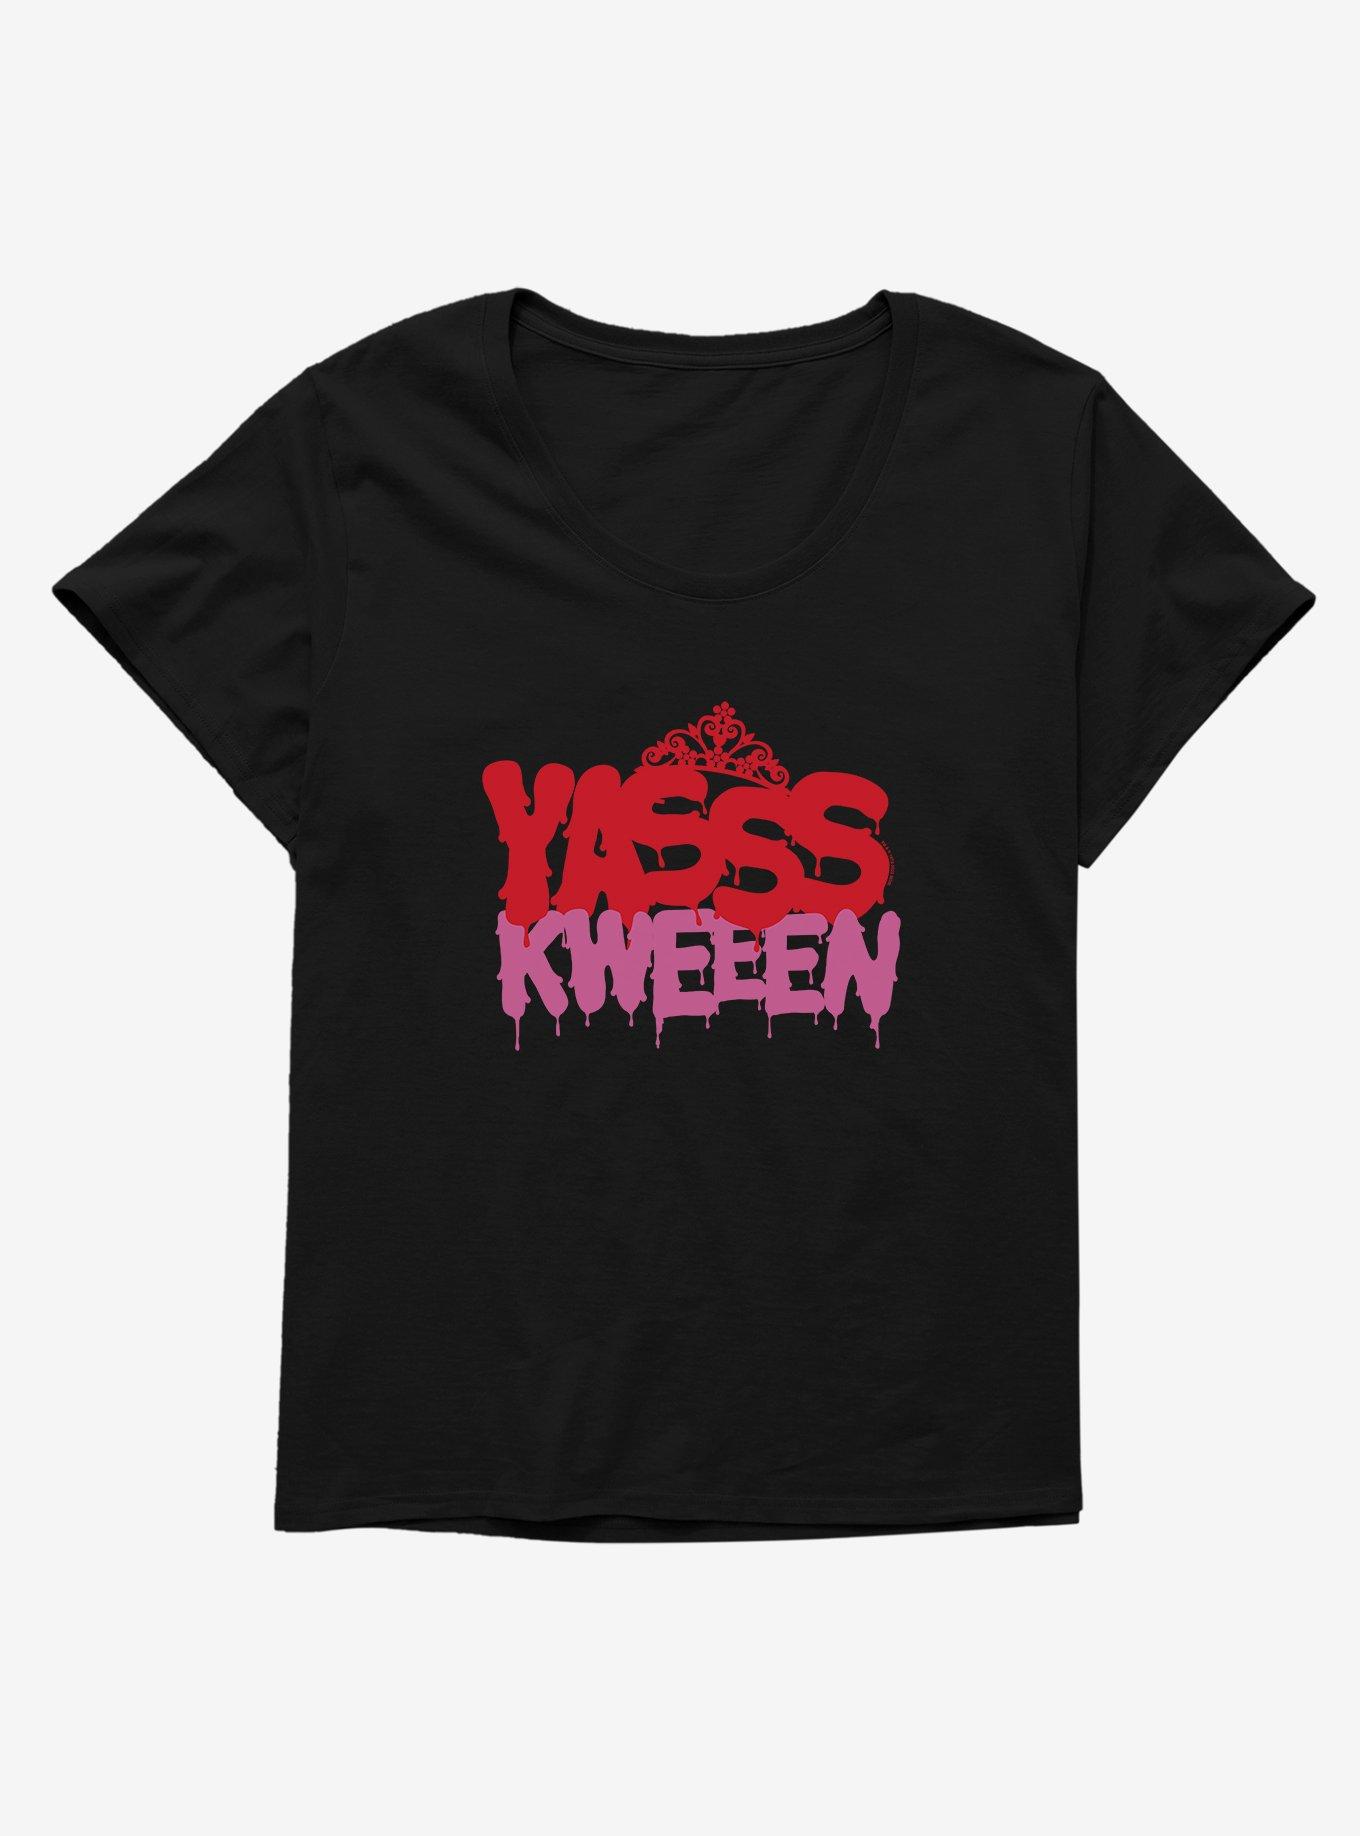 Carrie 1976 Yasss Kweeen Girls T-Shirt Plus